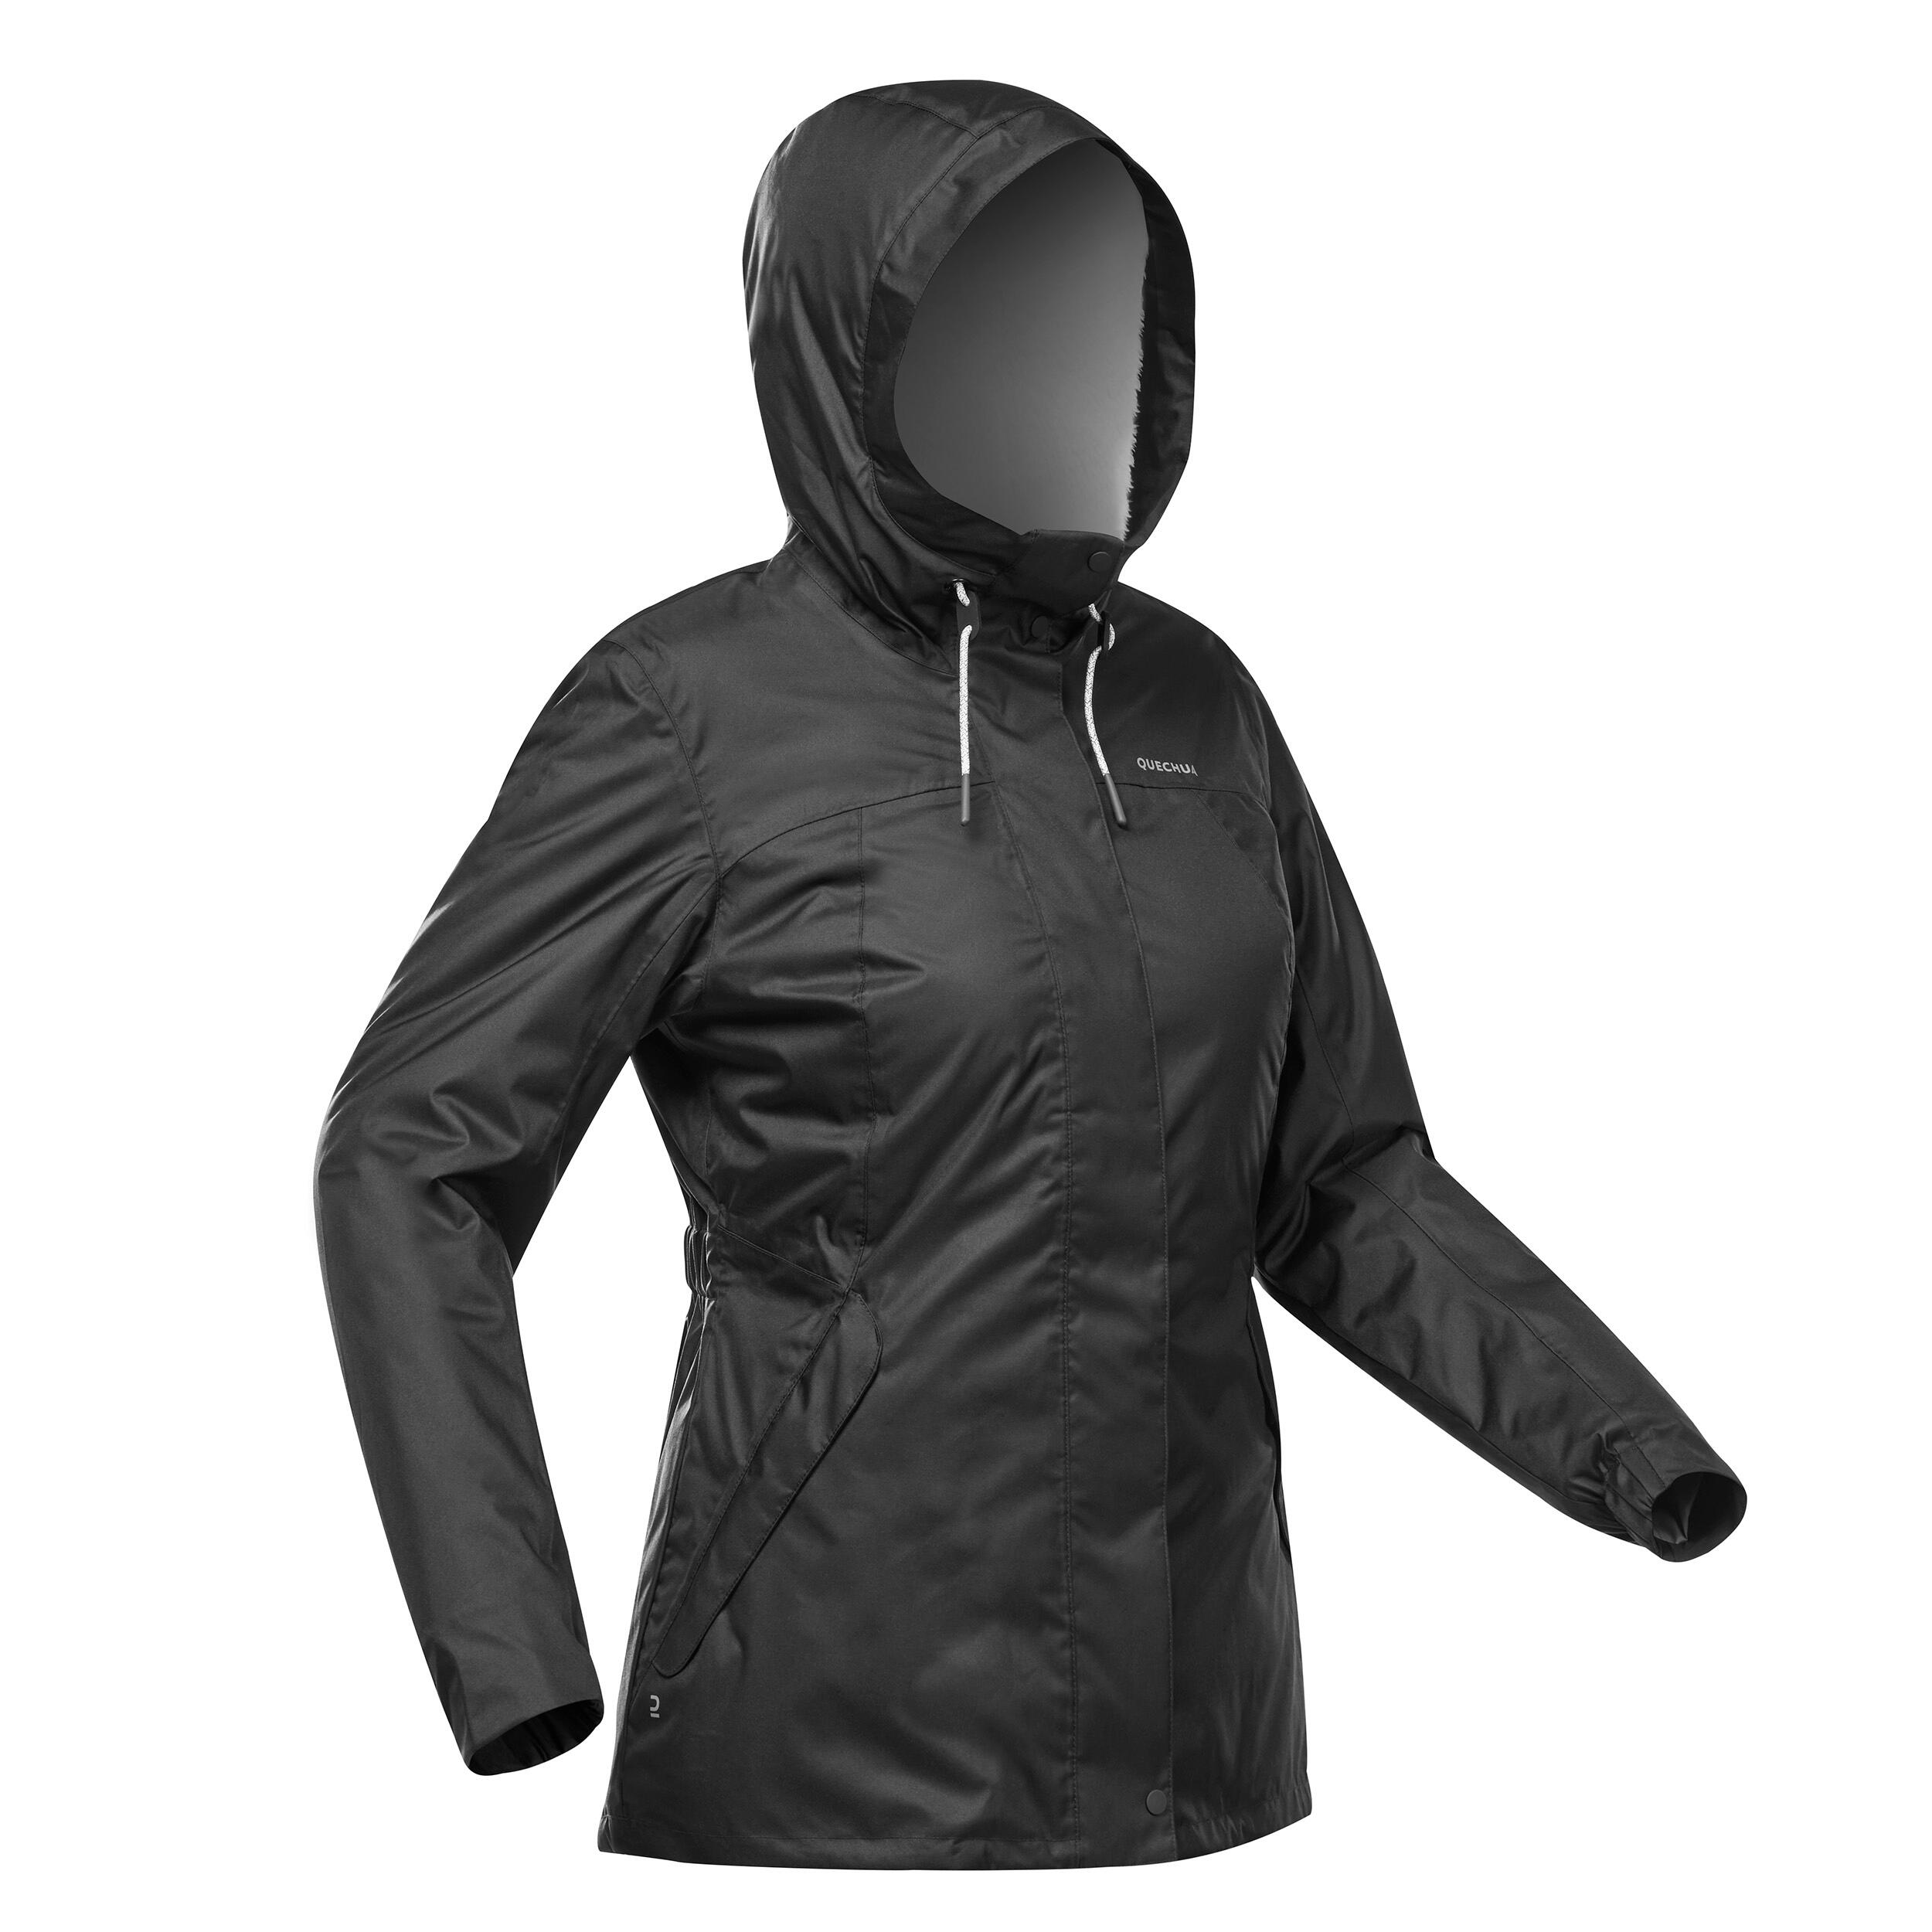 Buy Women's Hiking Warm Waterproof Jacket X Warm Purple Online